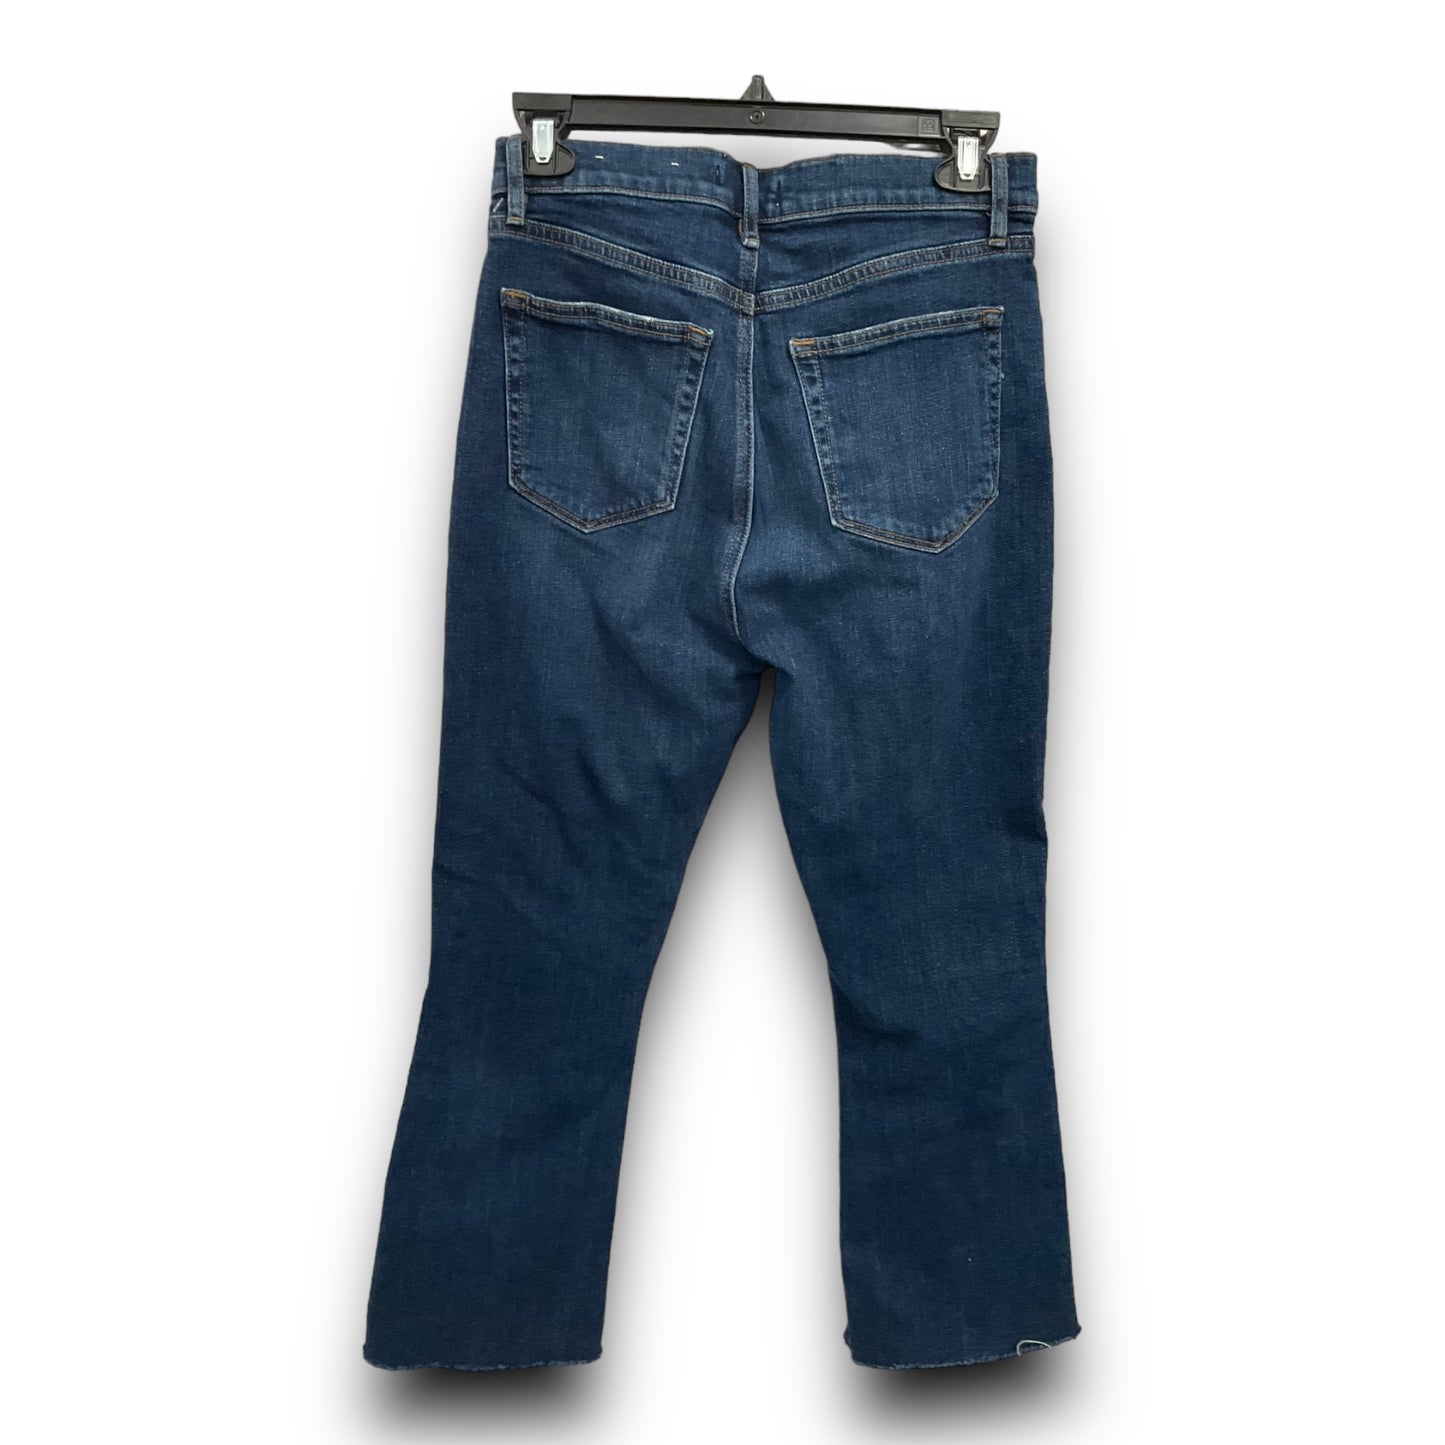 Jeans Cropped By Loft  Size: 2